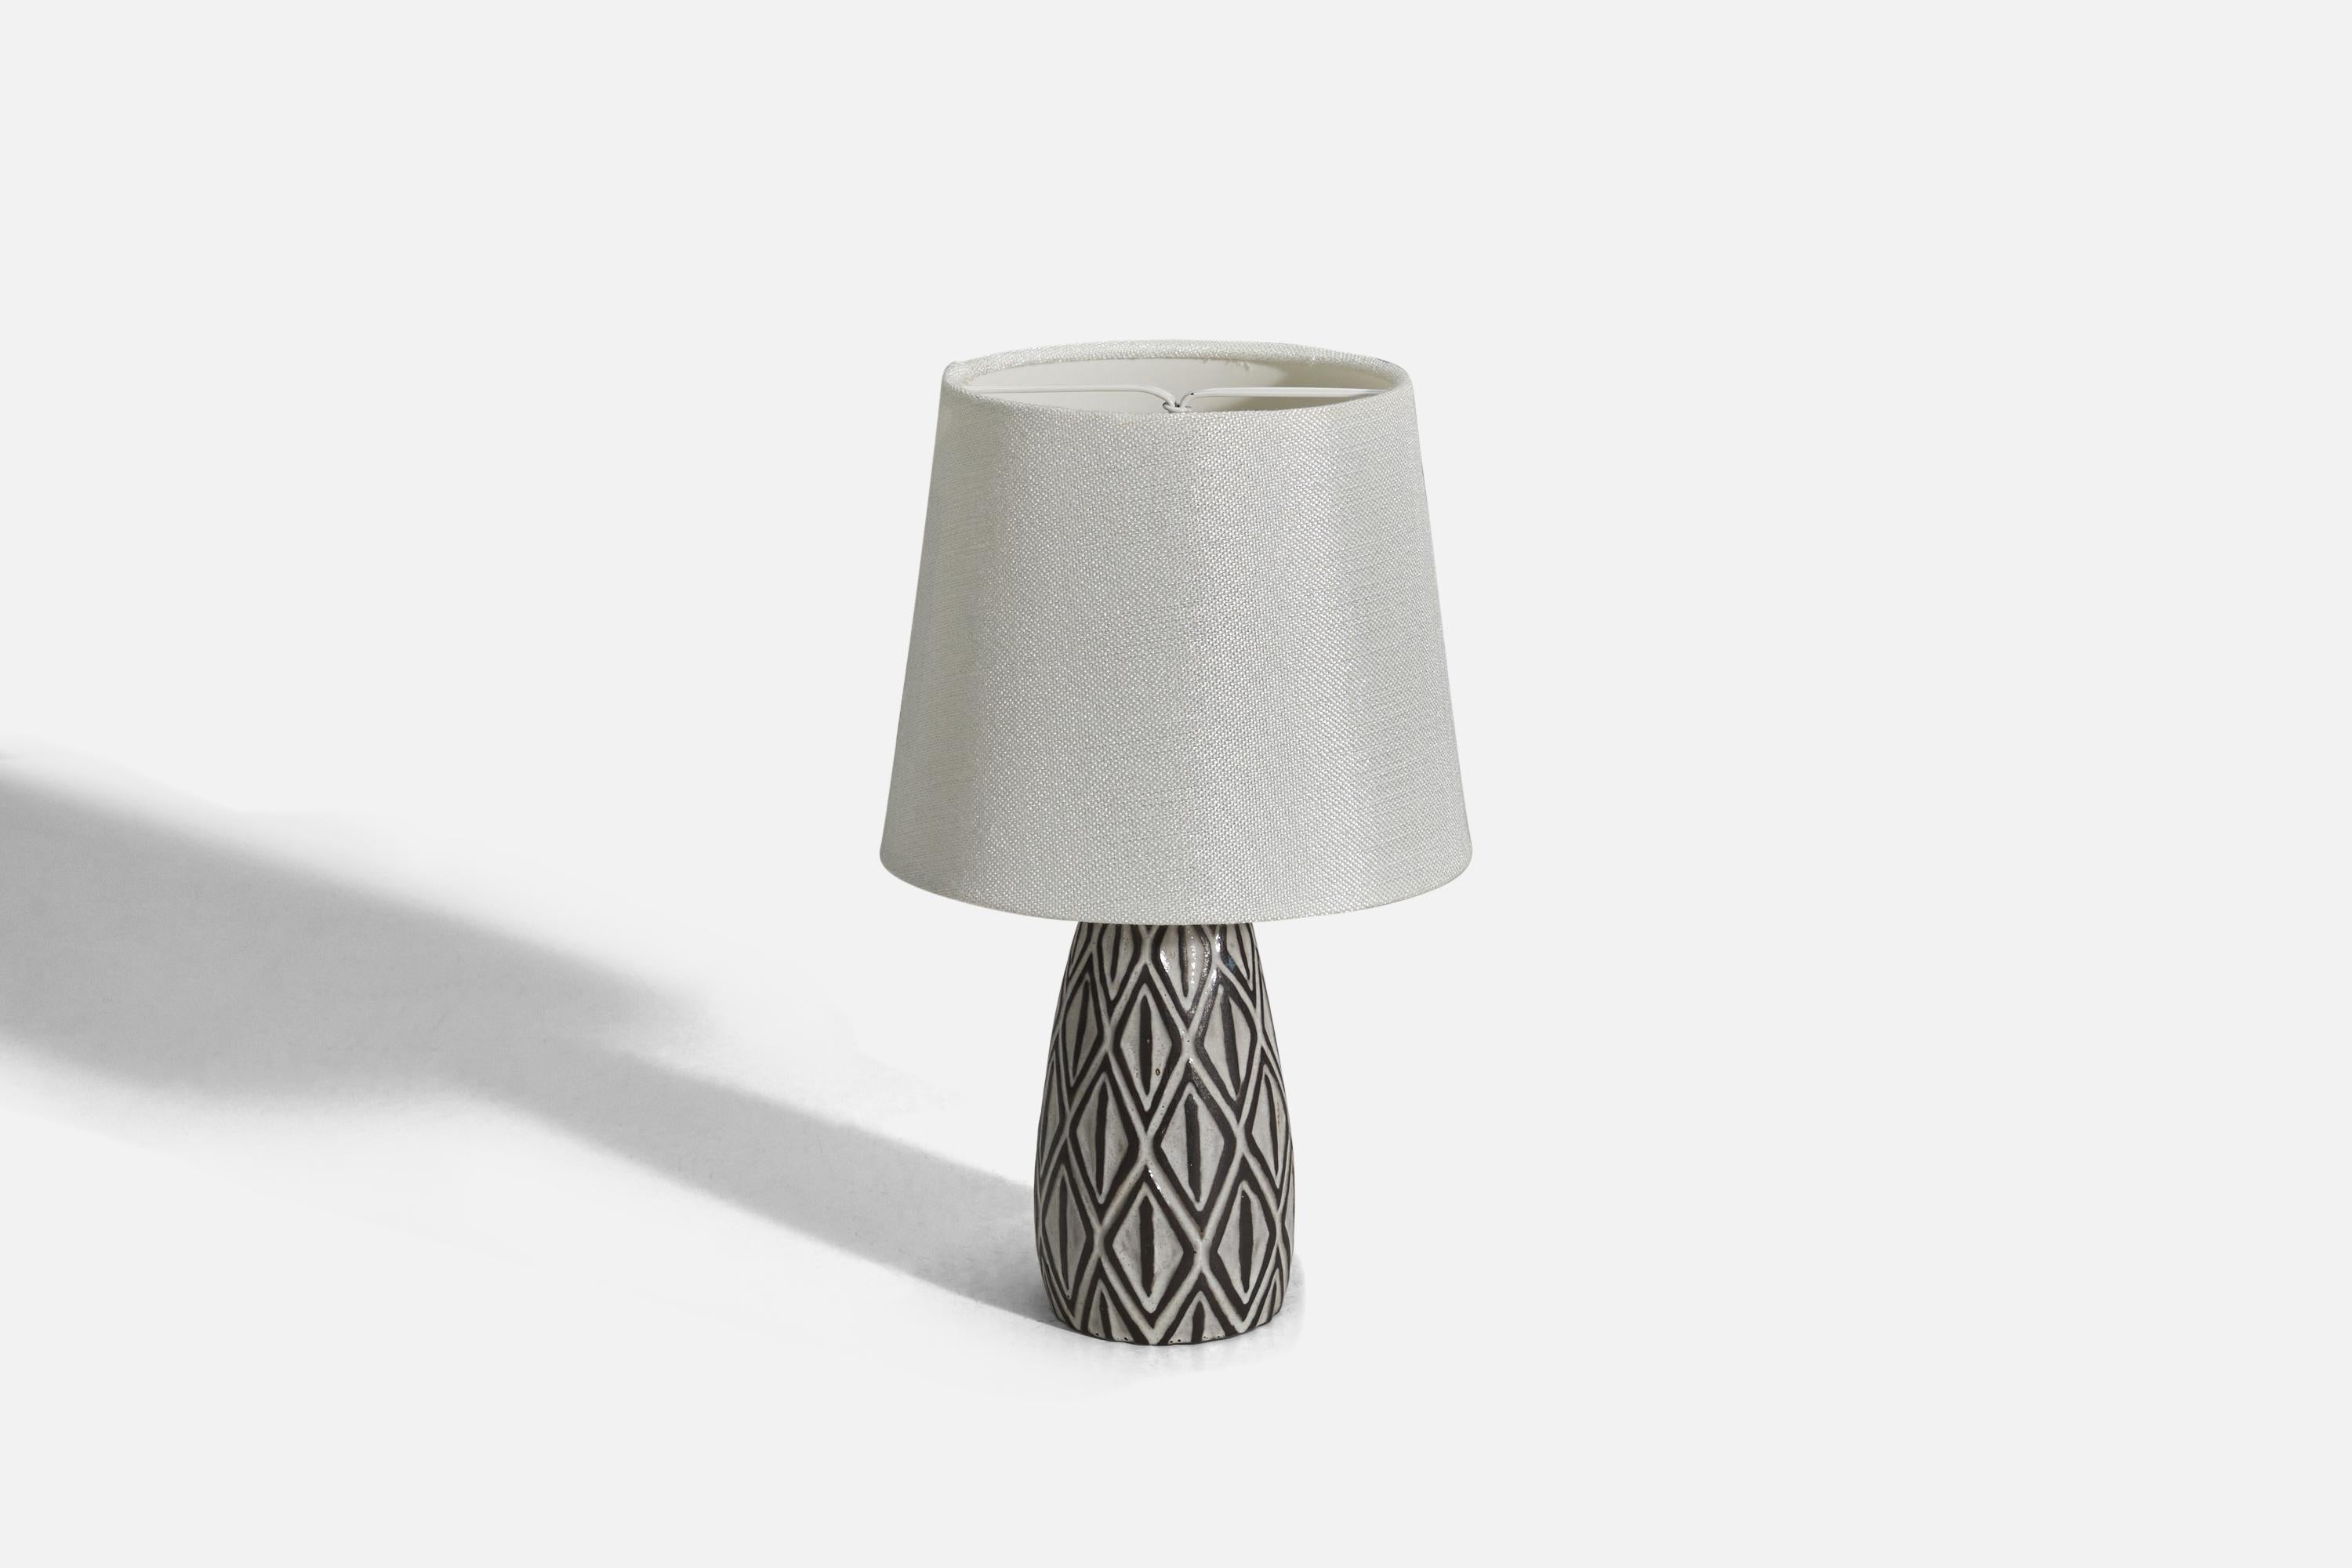 Scandinavian Modern Danish Designer, Table Lamp, White and Brown Glazed Stoneware, Denmark, 1960s For Sale